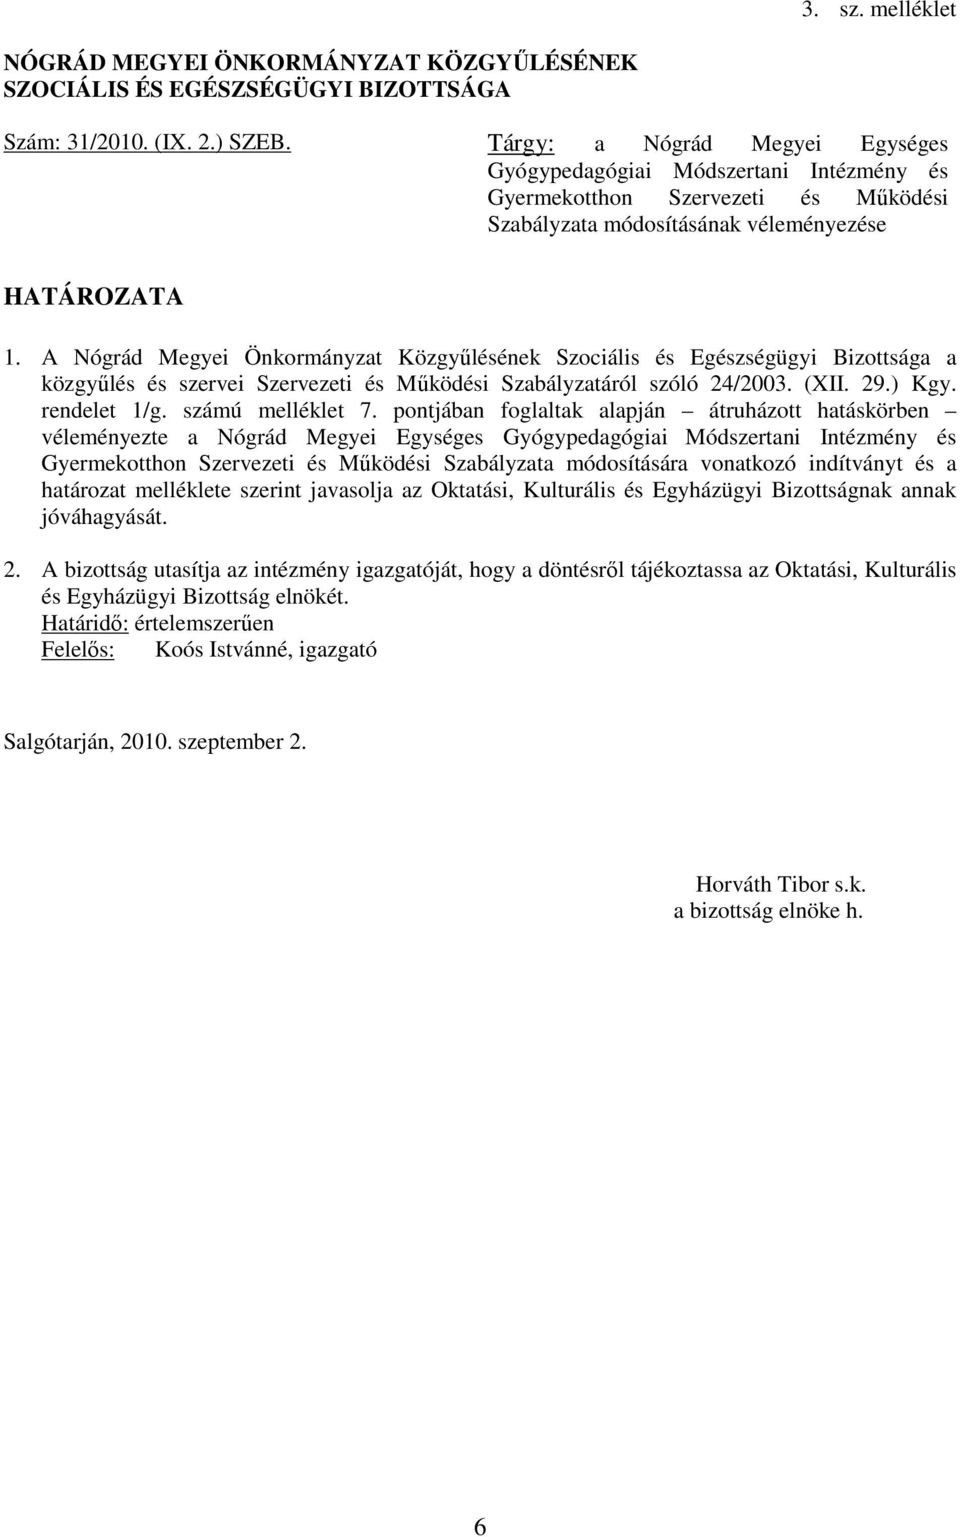 A Nógrád Megyei Önkormányzat Közgyűlésének Szociális és Egészségügyi Bizottsága a közgyűlés és szervei Szervezeti és Működési Szabályzatáról szóló 24/2003. (XII. 29.) Kgy. rendelet 1/g.